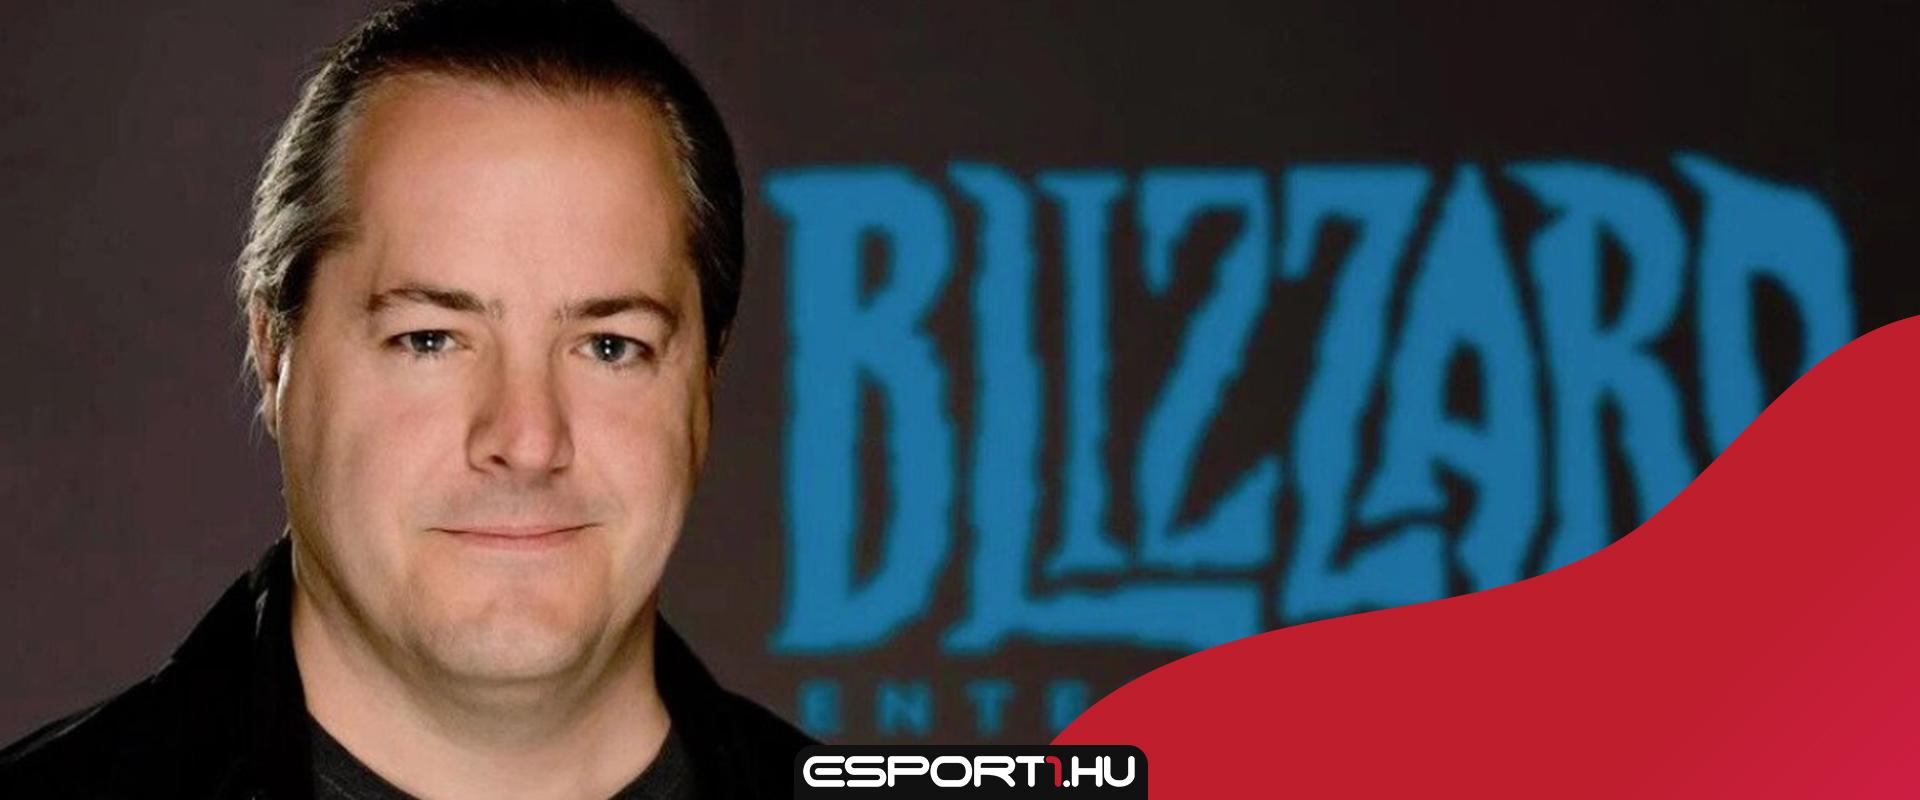 Lemondott a Blizzard elnöke a sorozatos botrányok hatására